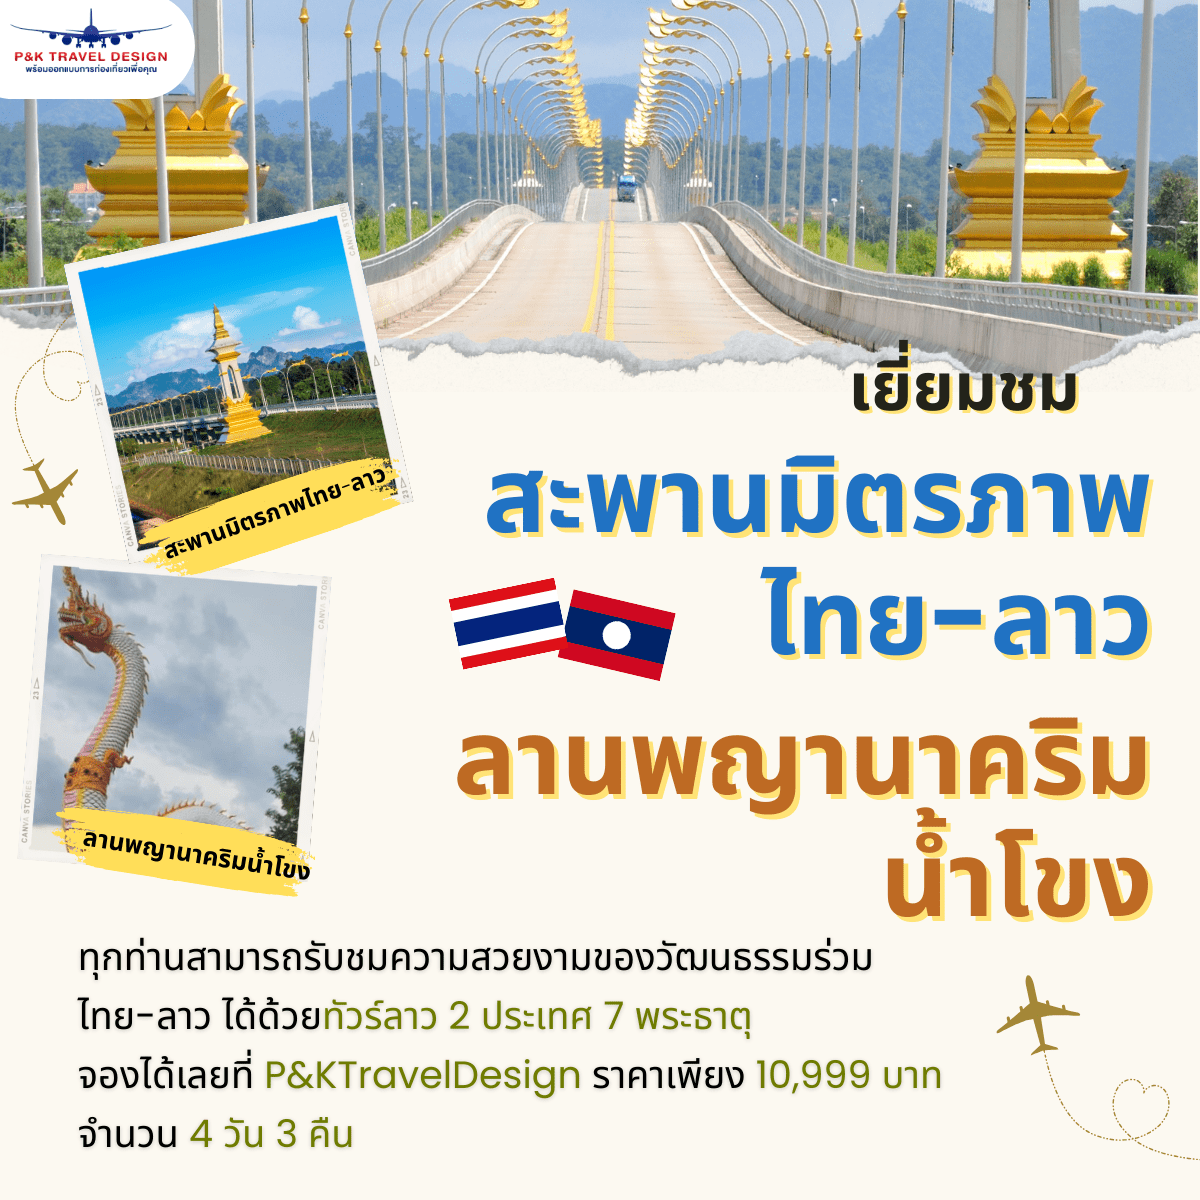 เยี่ยมชม สะพานมิตรภาพไทยลาวแห่งที่ 3 ลานพญานาคริมน้ำโขง